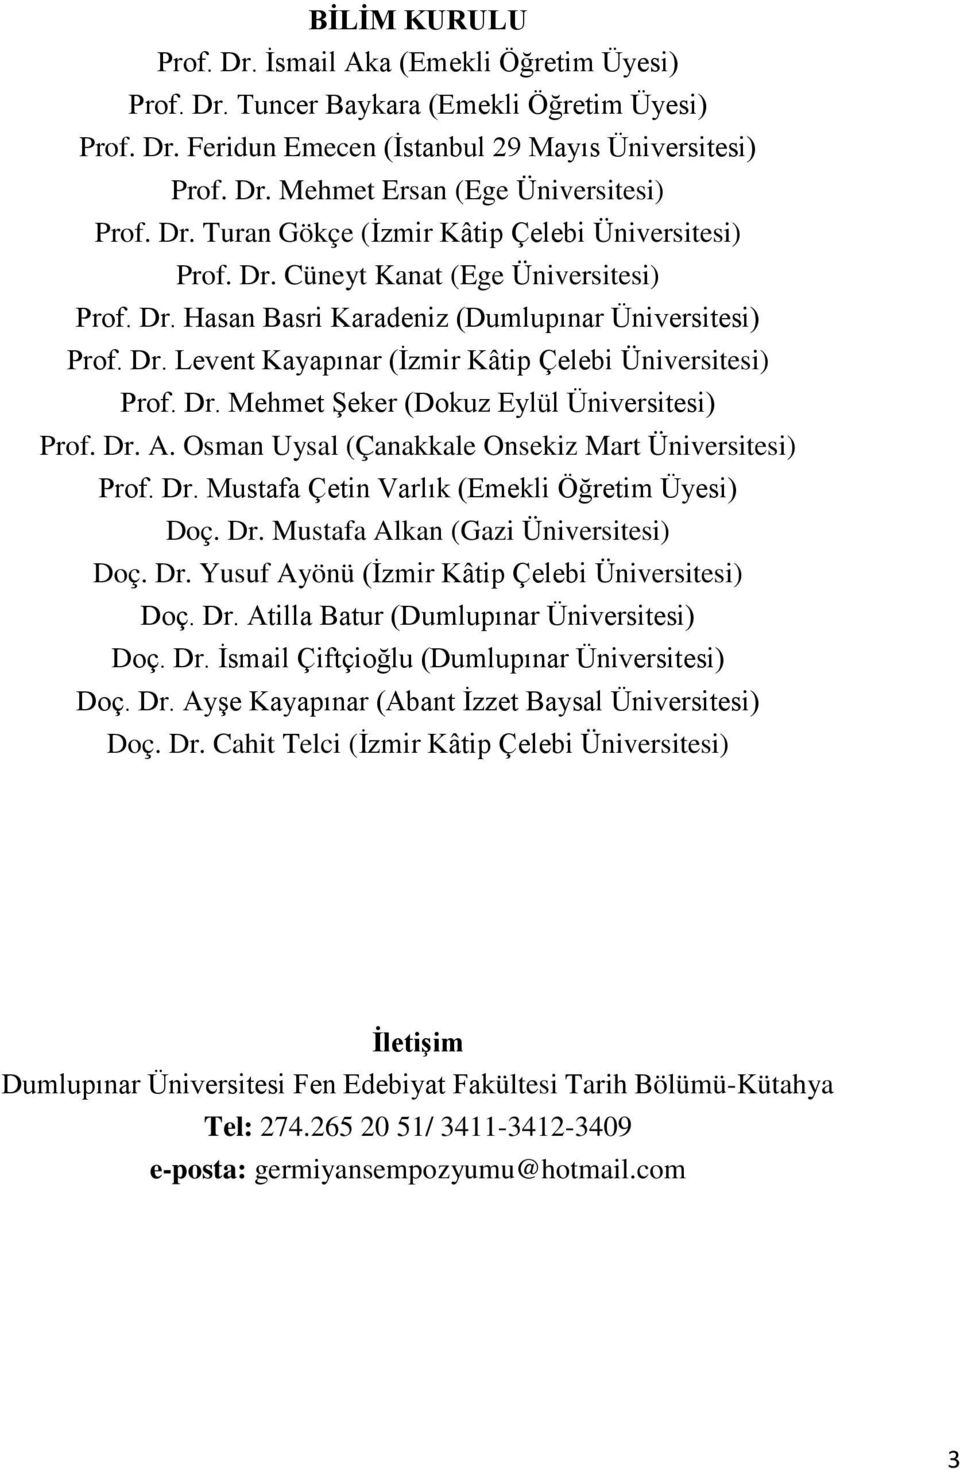 Dr. Mehmet Şeker (Dokuz Eylül Üniversitesi) Prof. Dr. A. Osman Uysal (Çanakkale Onsekiz Mart Üniversitesi) Prof. Dr. Mustafa Çetin Varlık (Emekli Öğretim Üyesi) Doç. Dr. Mustafa Alkan (Gazi Üniversitesi) Doç.